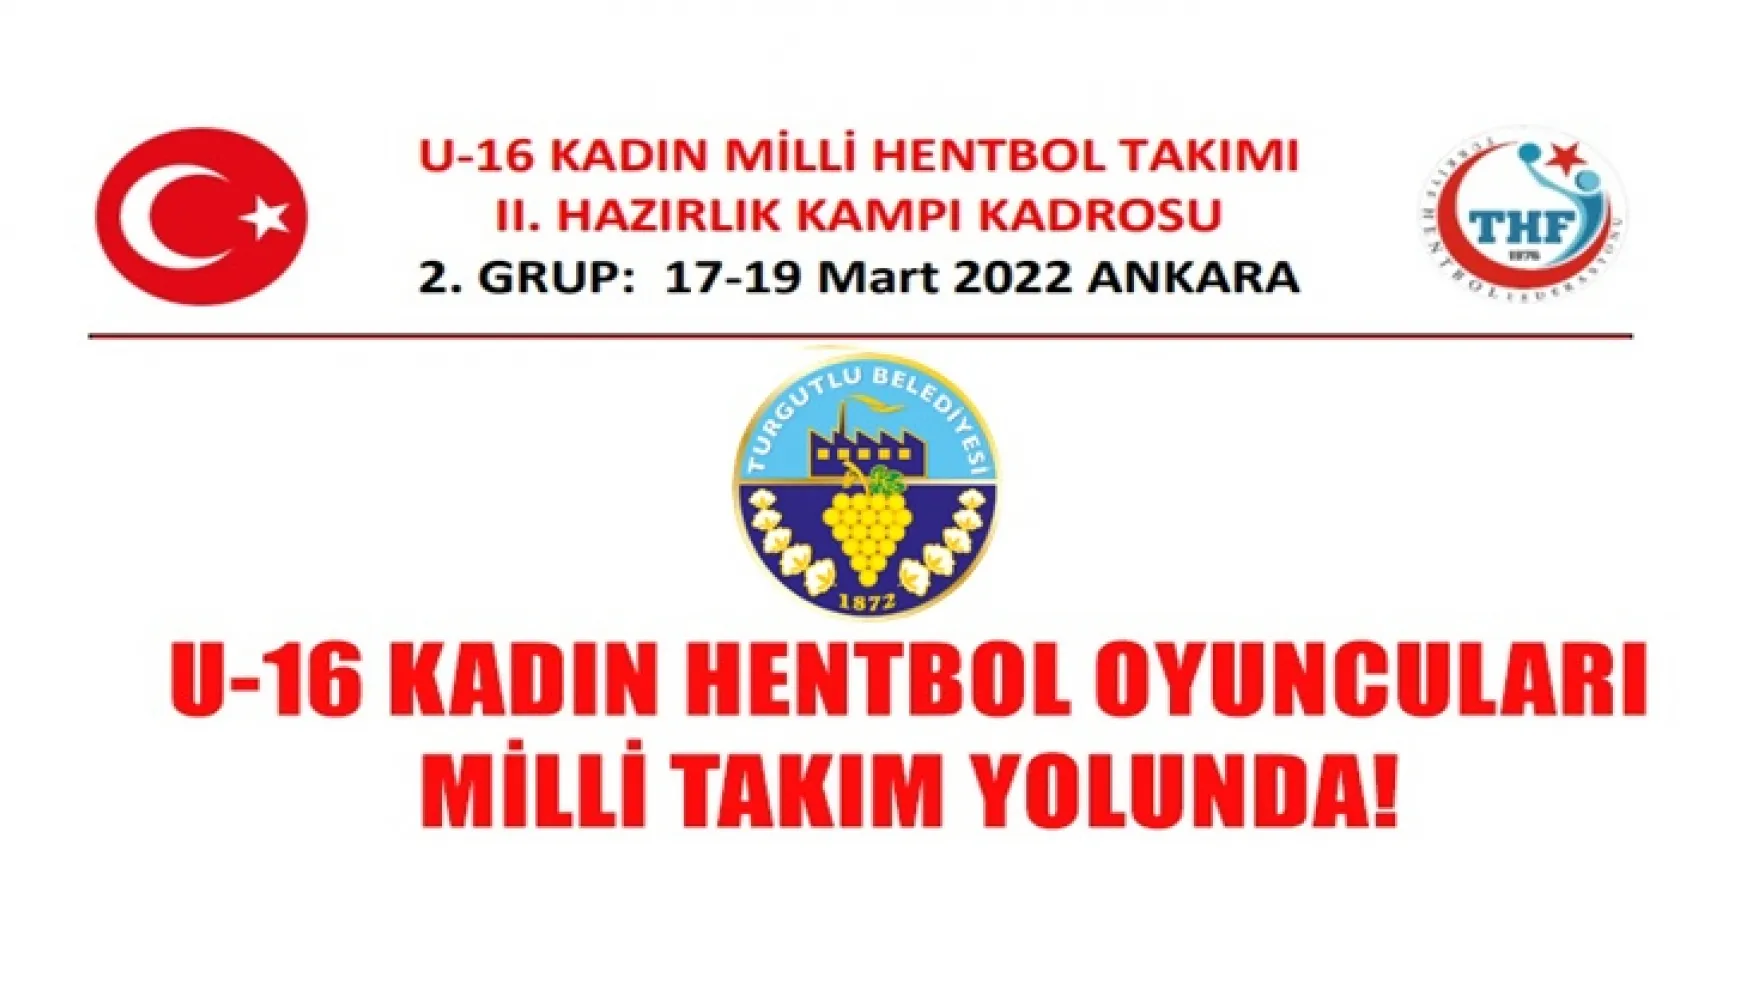 Turgutlu Belediyesi U-16 Kadın Hentbol oyuncuları Milli Takım Yolunda!